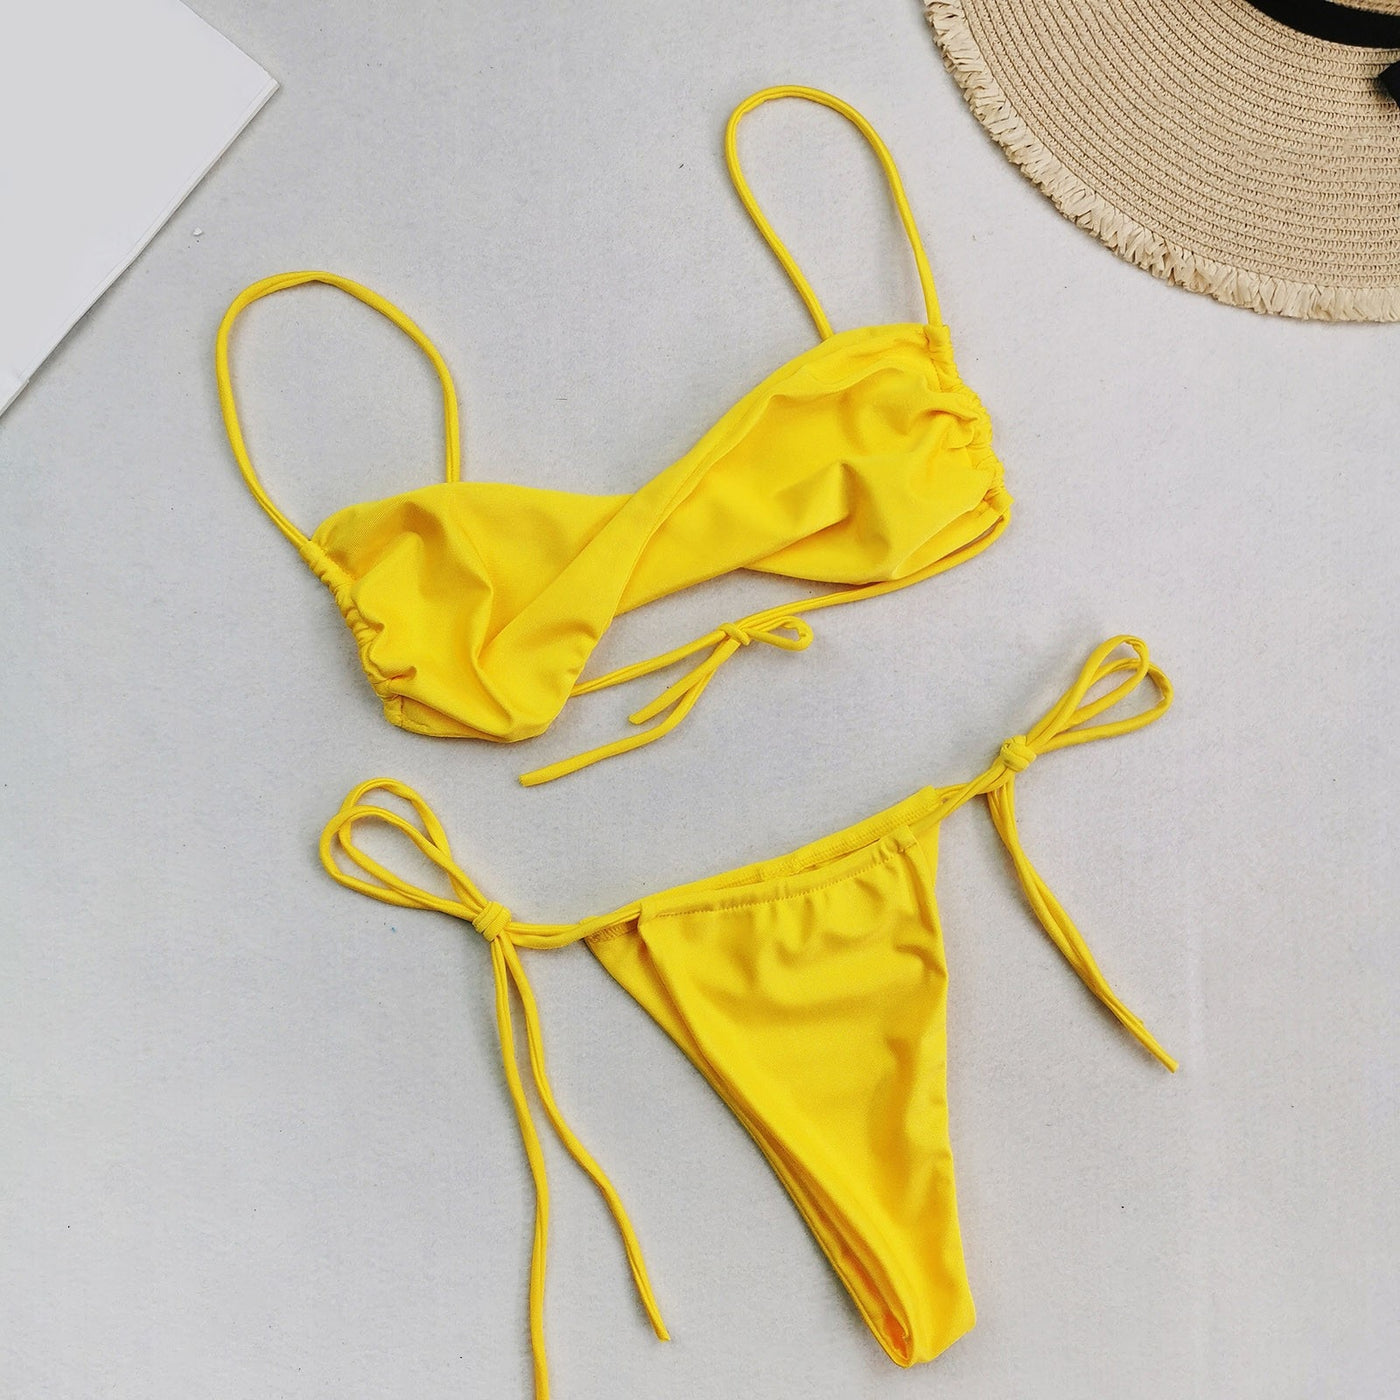 Dwuczęściowy strój kąpielowy mikro bikini